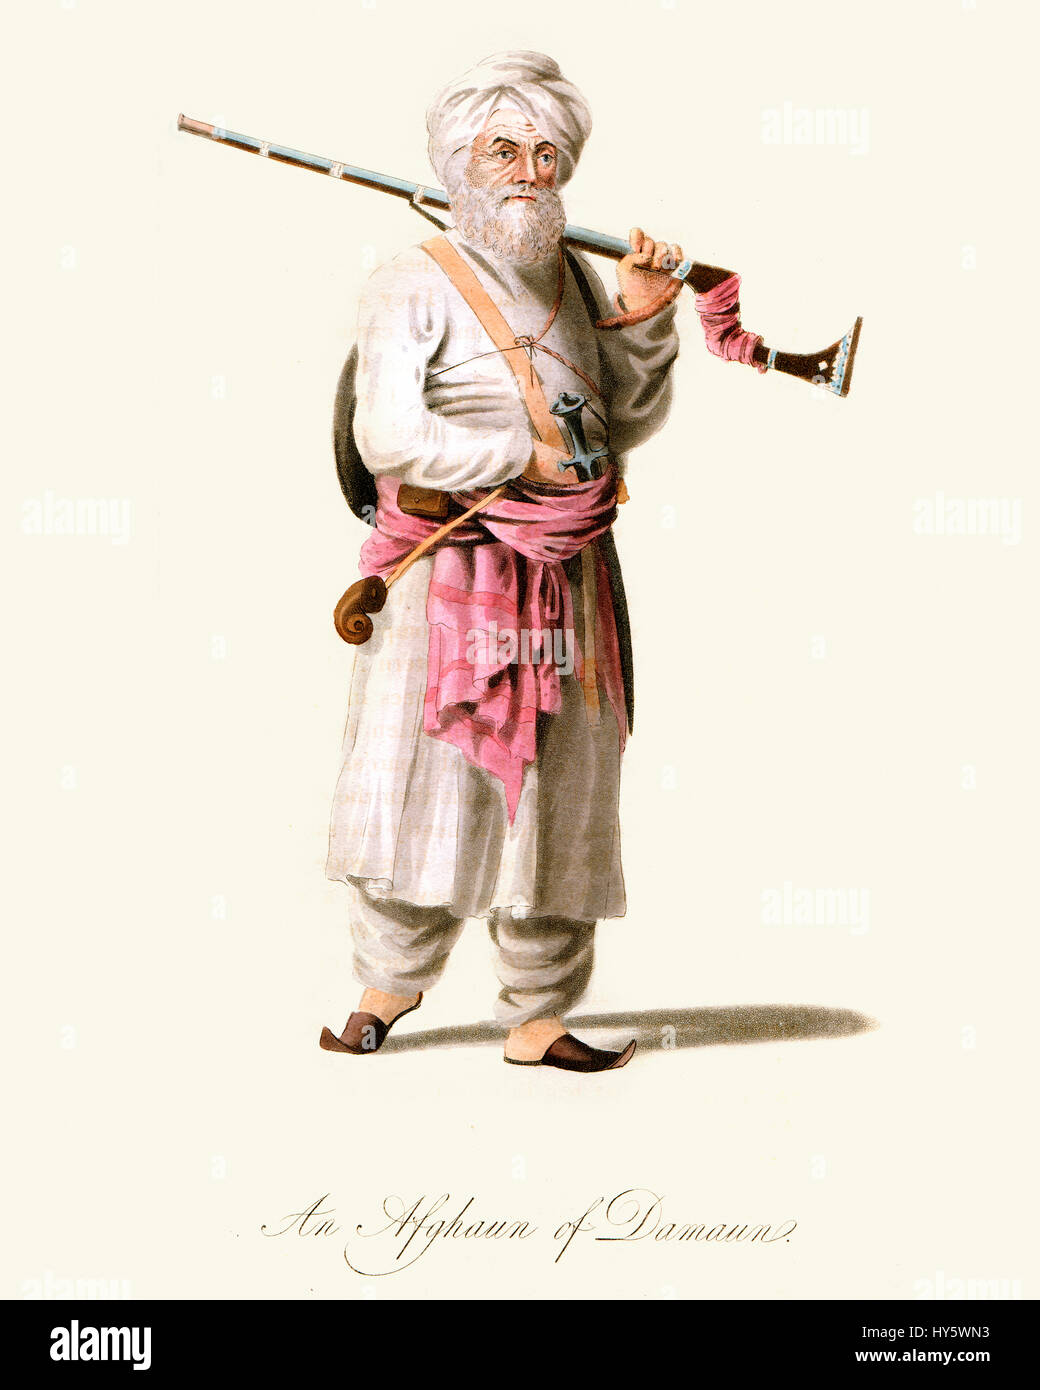 Grabado en color Vintage desde 1819 mostrando un afgano guerrero de la zona alrededor de Daman, provincia de Kandahar, Afganistán. Foto de stock